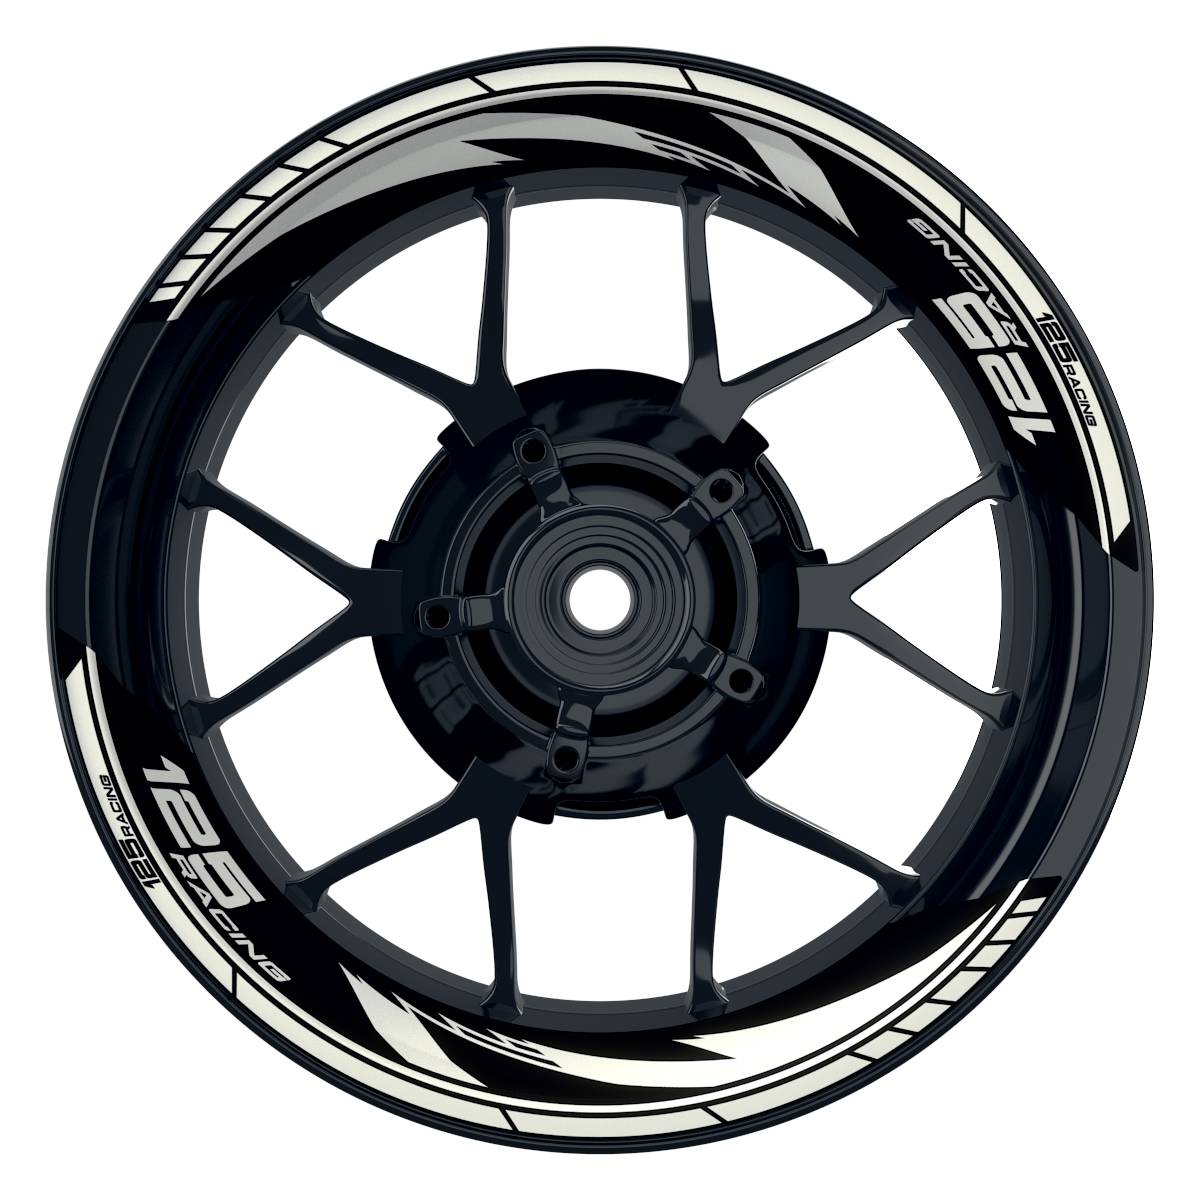 KTM Racing 125 Razor schwarz weiss Frontansicht